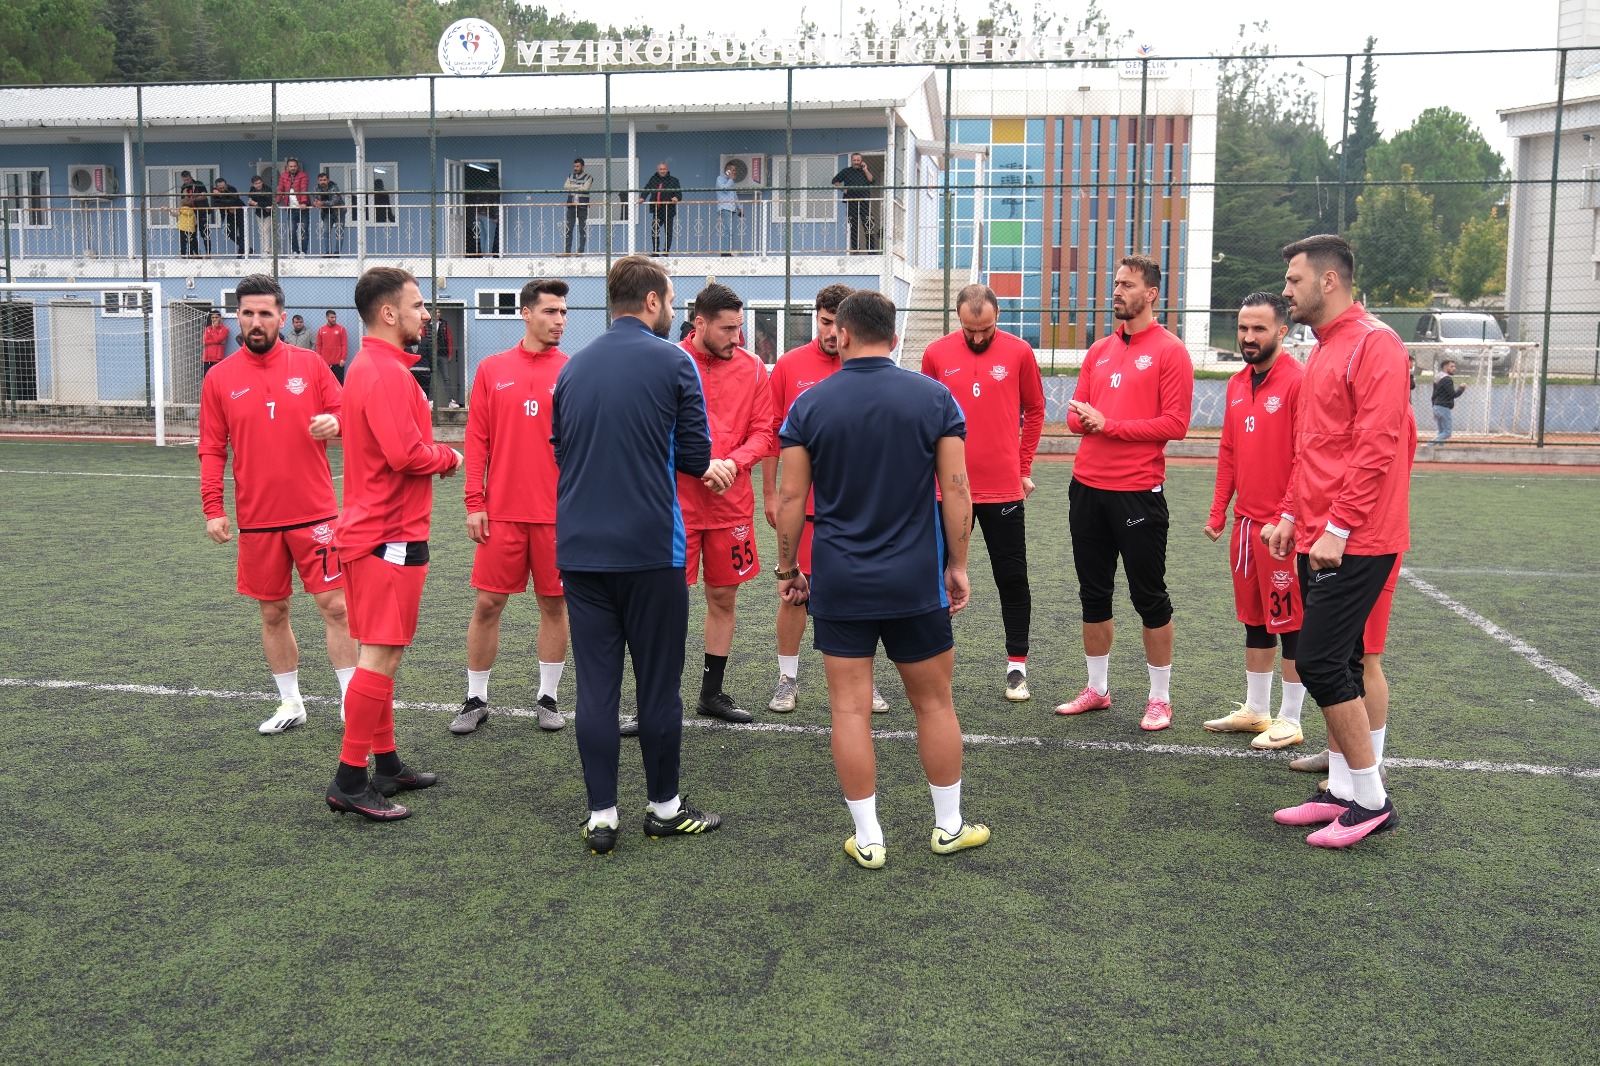 Bafraspor, Vezirköprü Belediyespor’u 3 - 0'lık skorla geçti